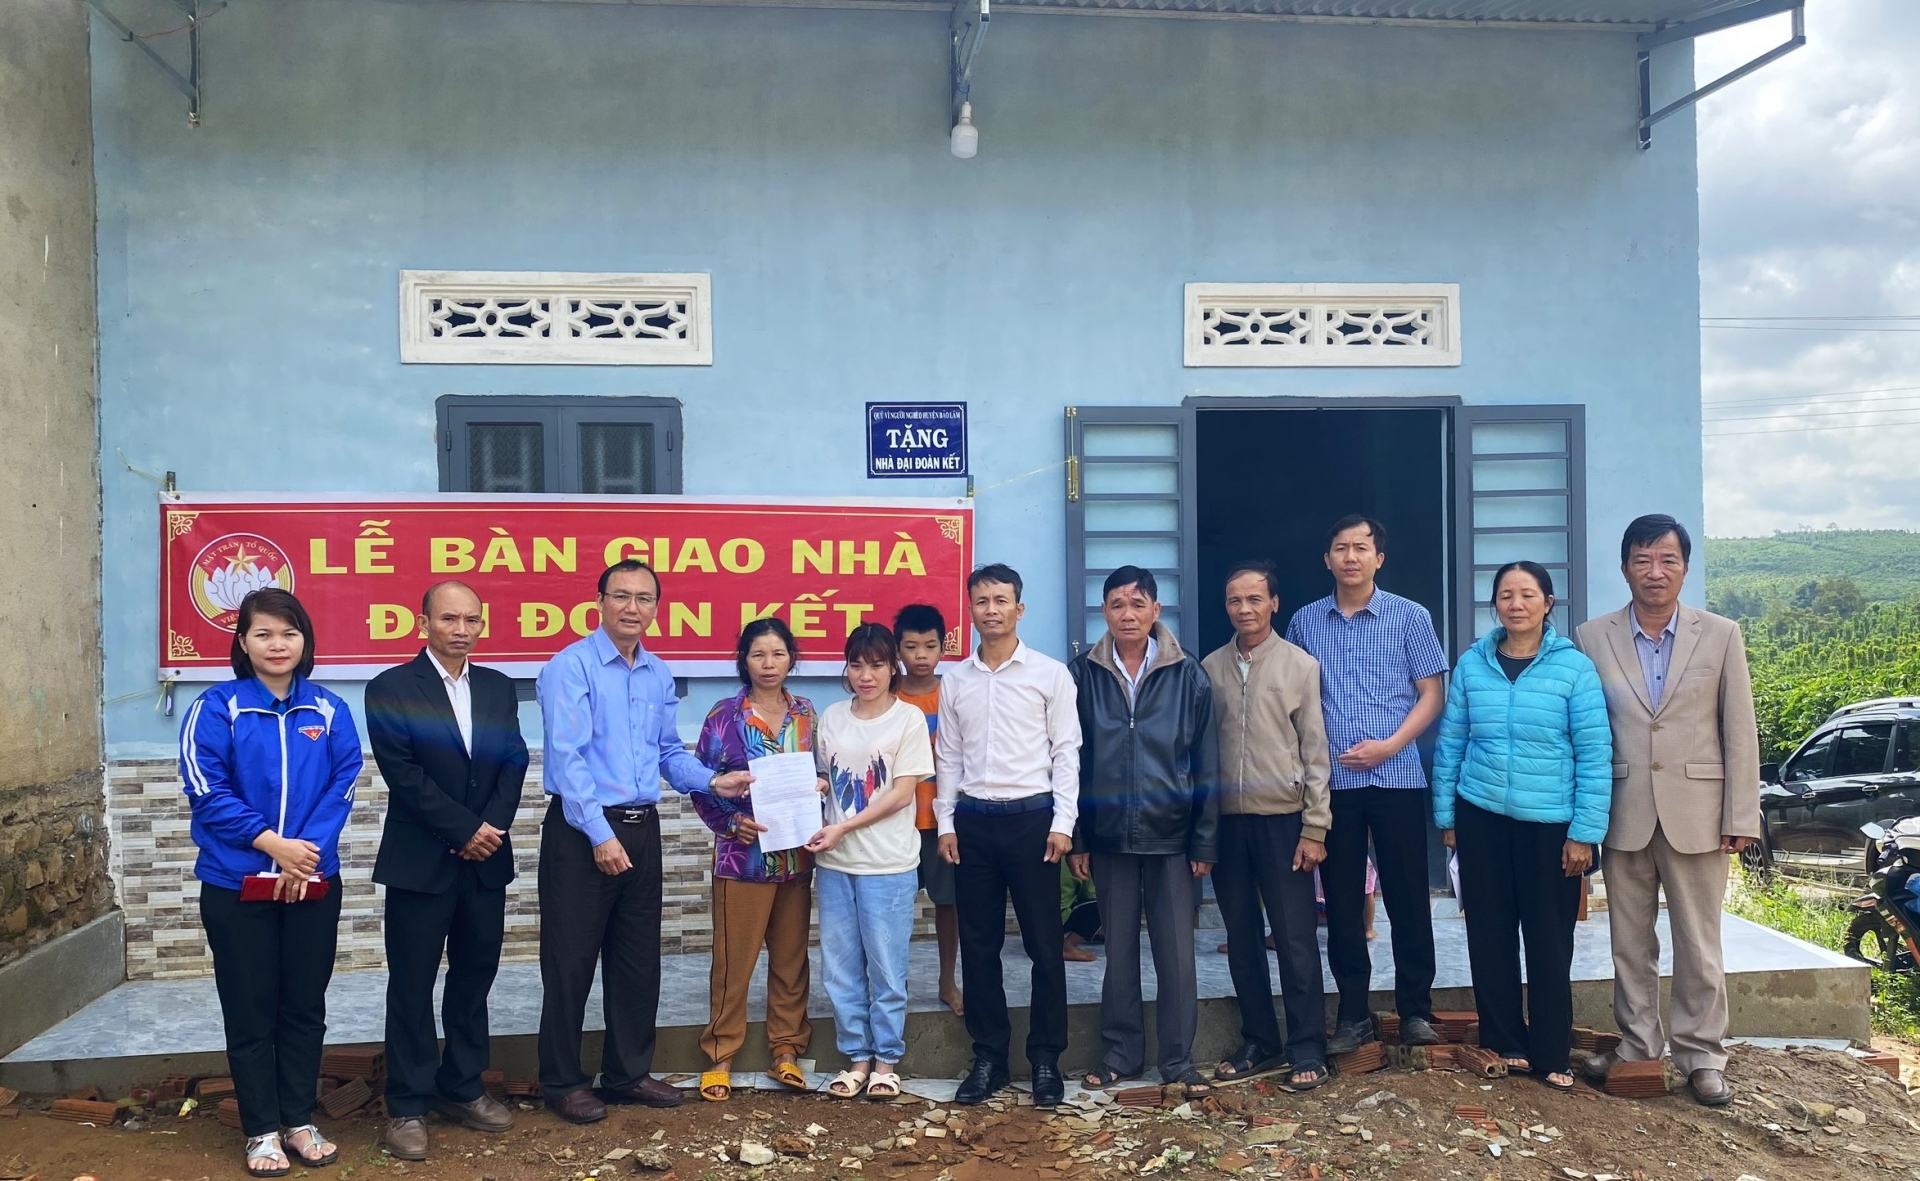 Ủy ban MTTQ Việt Nam huyện Bảo Lâm tổ chức bàn giao nhà Đại đoàn kết cho gia đình